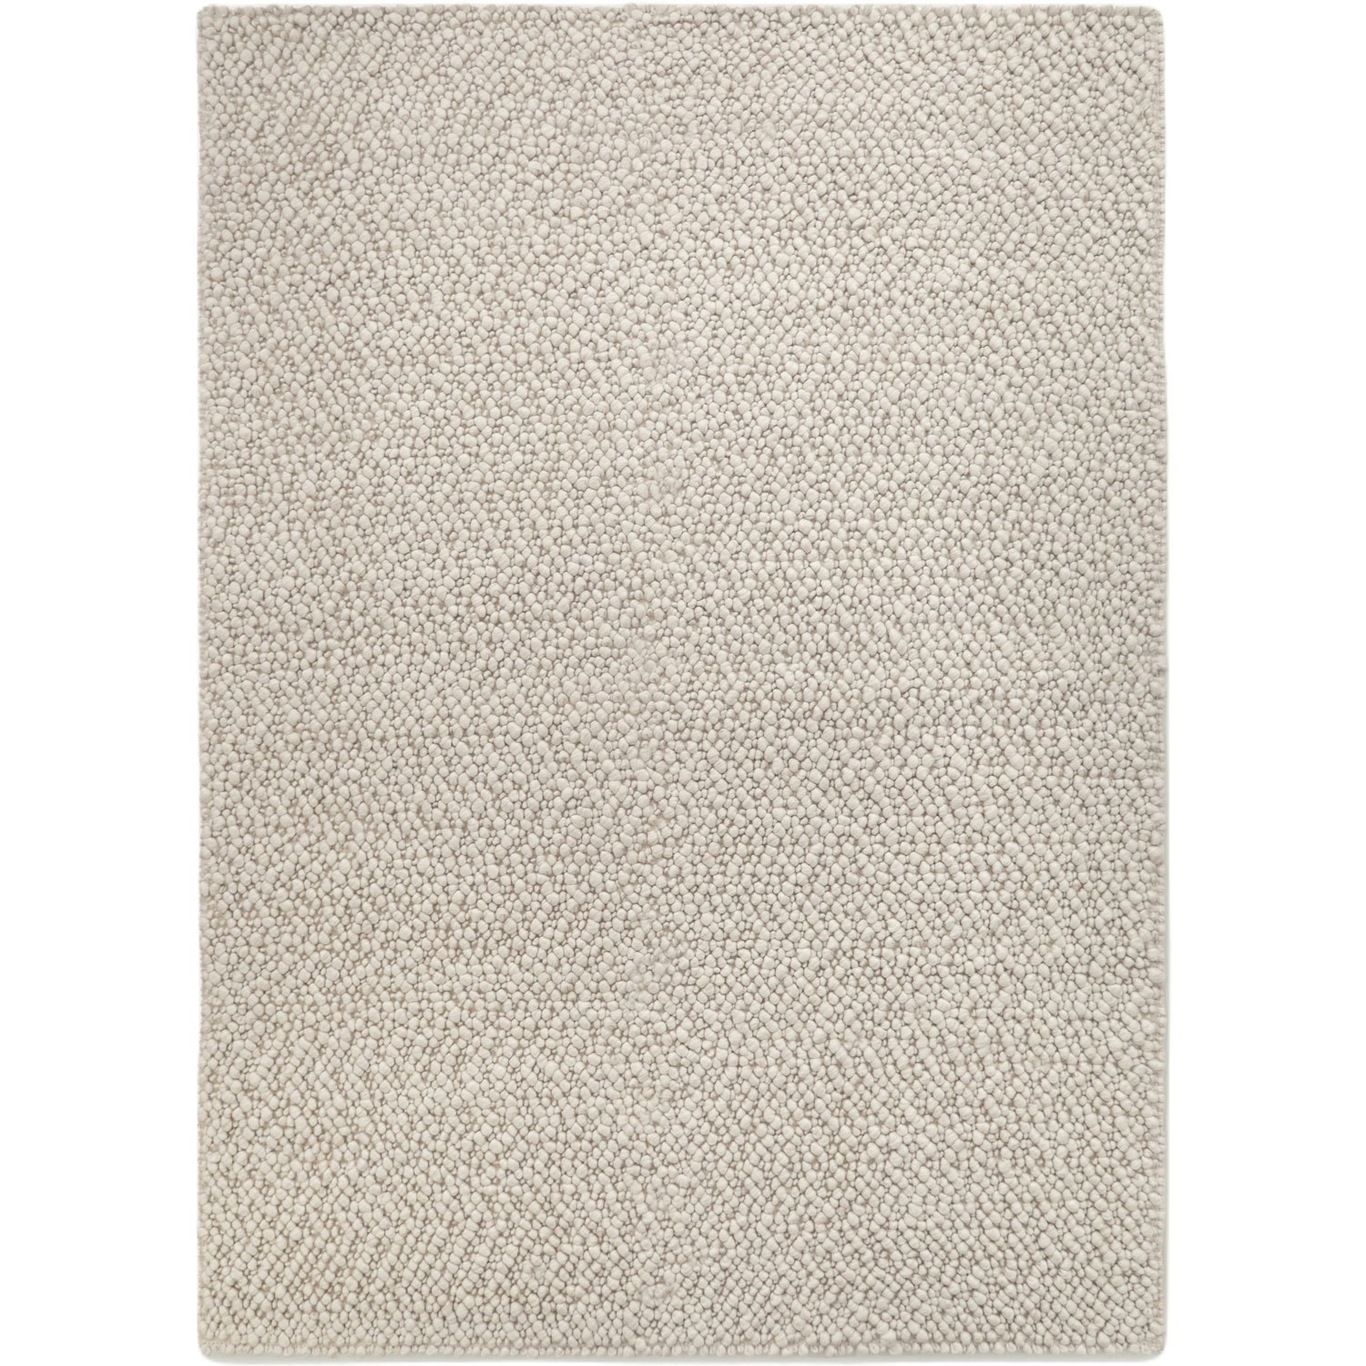 Andersdotter Wool Rug, 170x240 cm